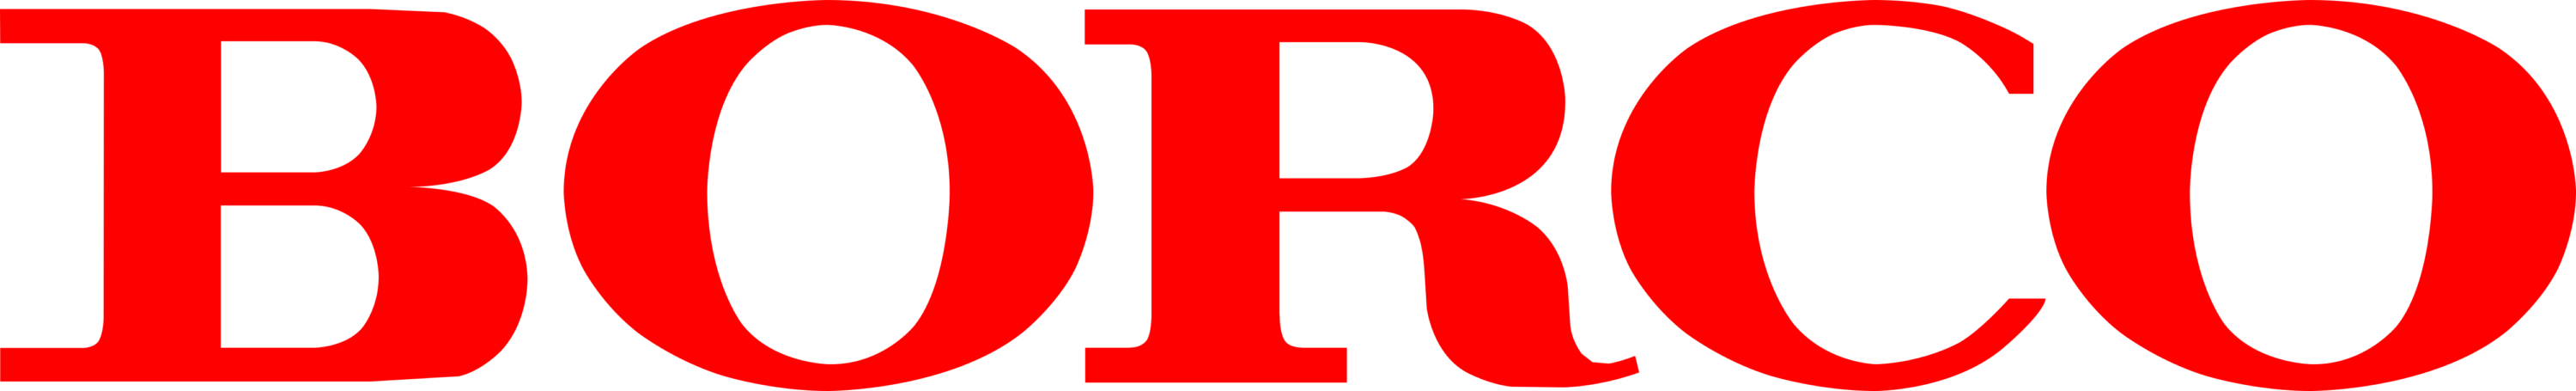 Borco Marken Import Matthiesen GmbH & Co. KG Logo